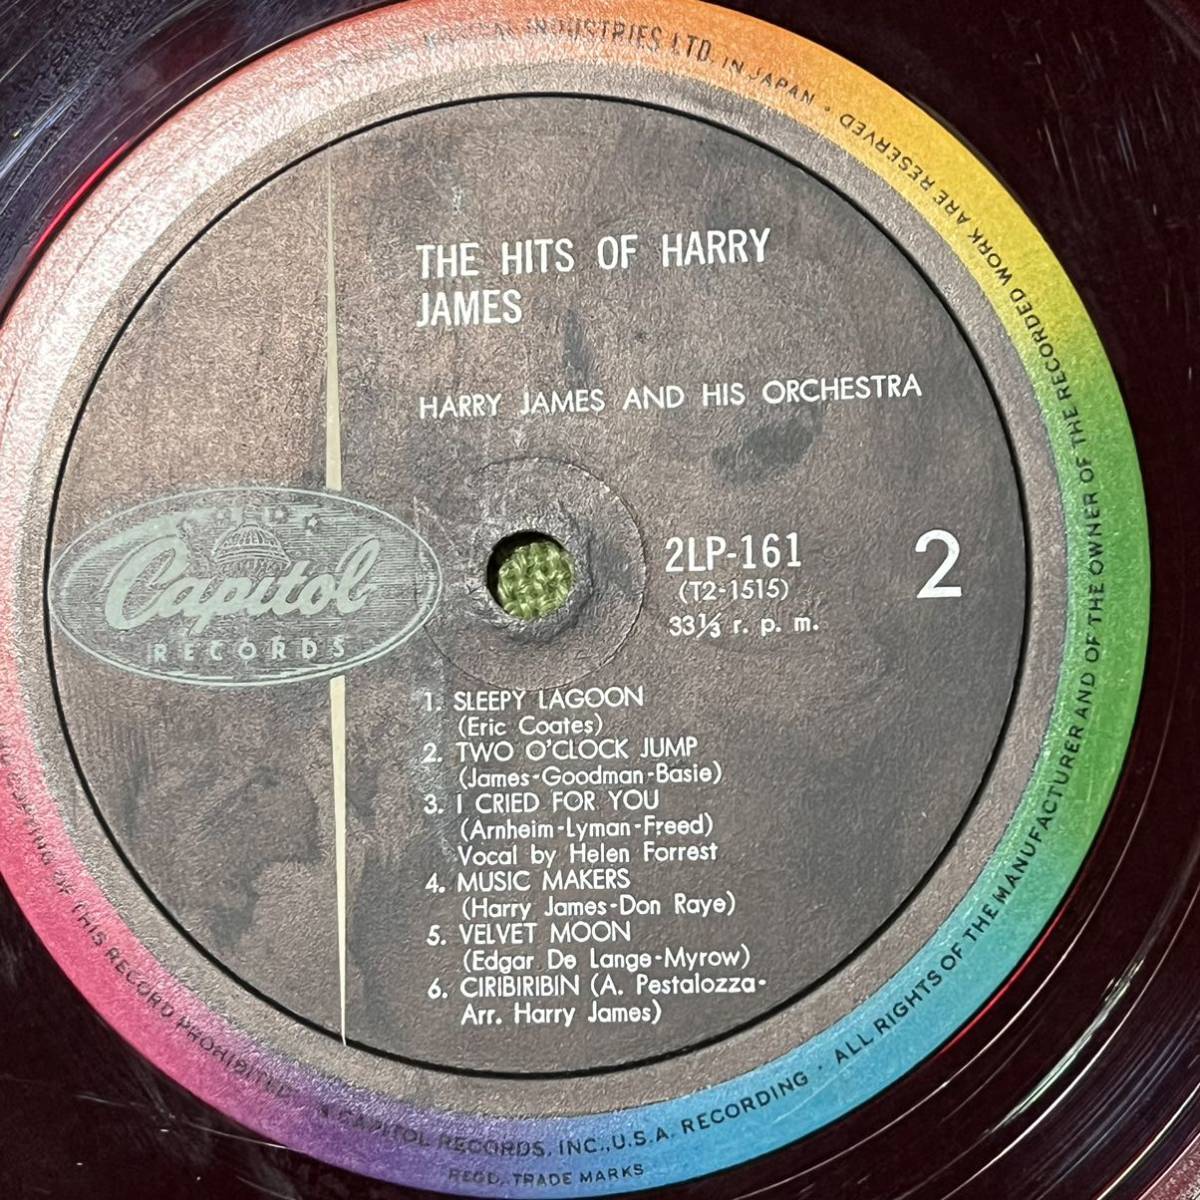 12/ペラジャケ/赤盤/MONO/The Hits Of Harry James/ベスト オブ ハリー ジェイムス/2LP-161/LPレコードアナログ盤/JAZZ_画像5